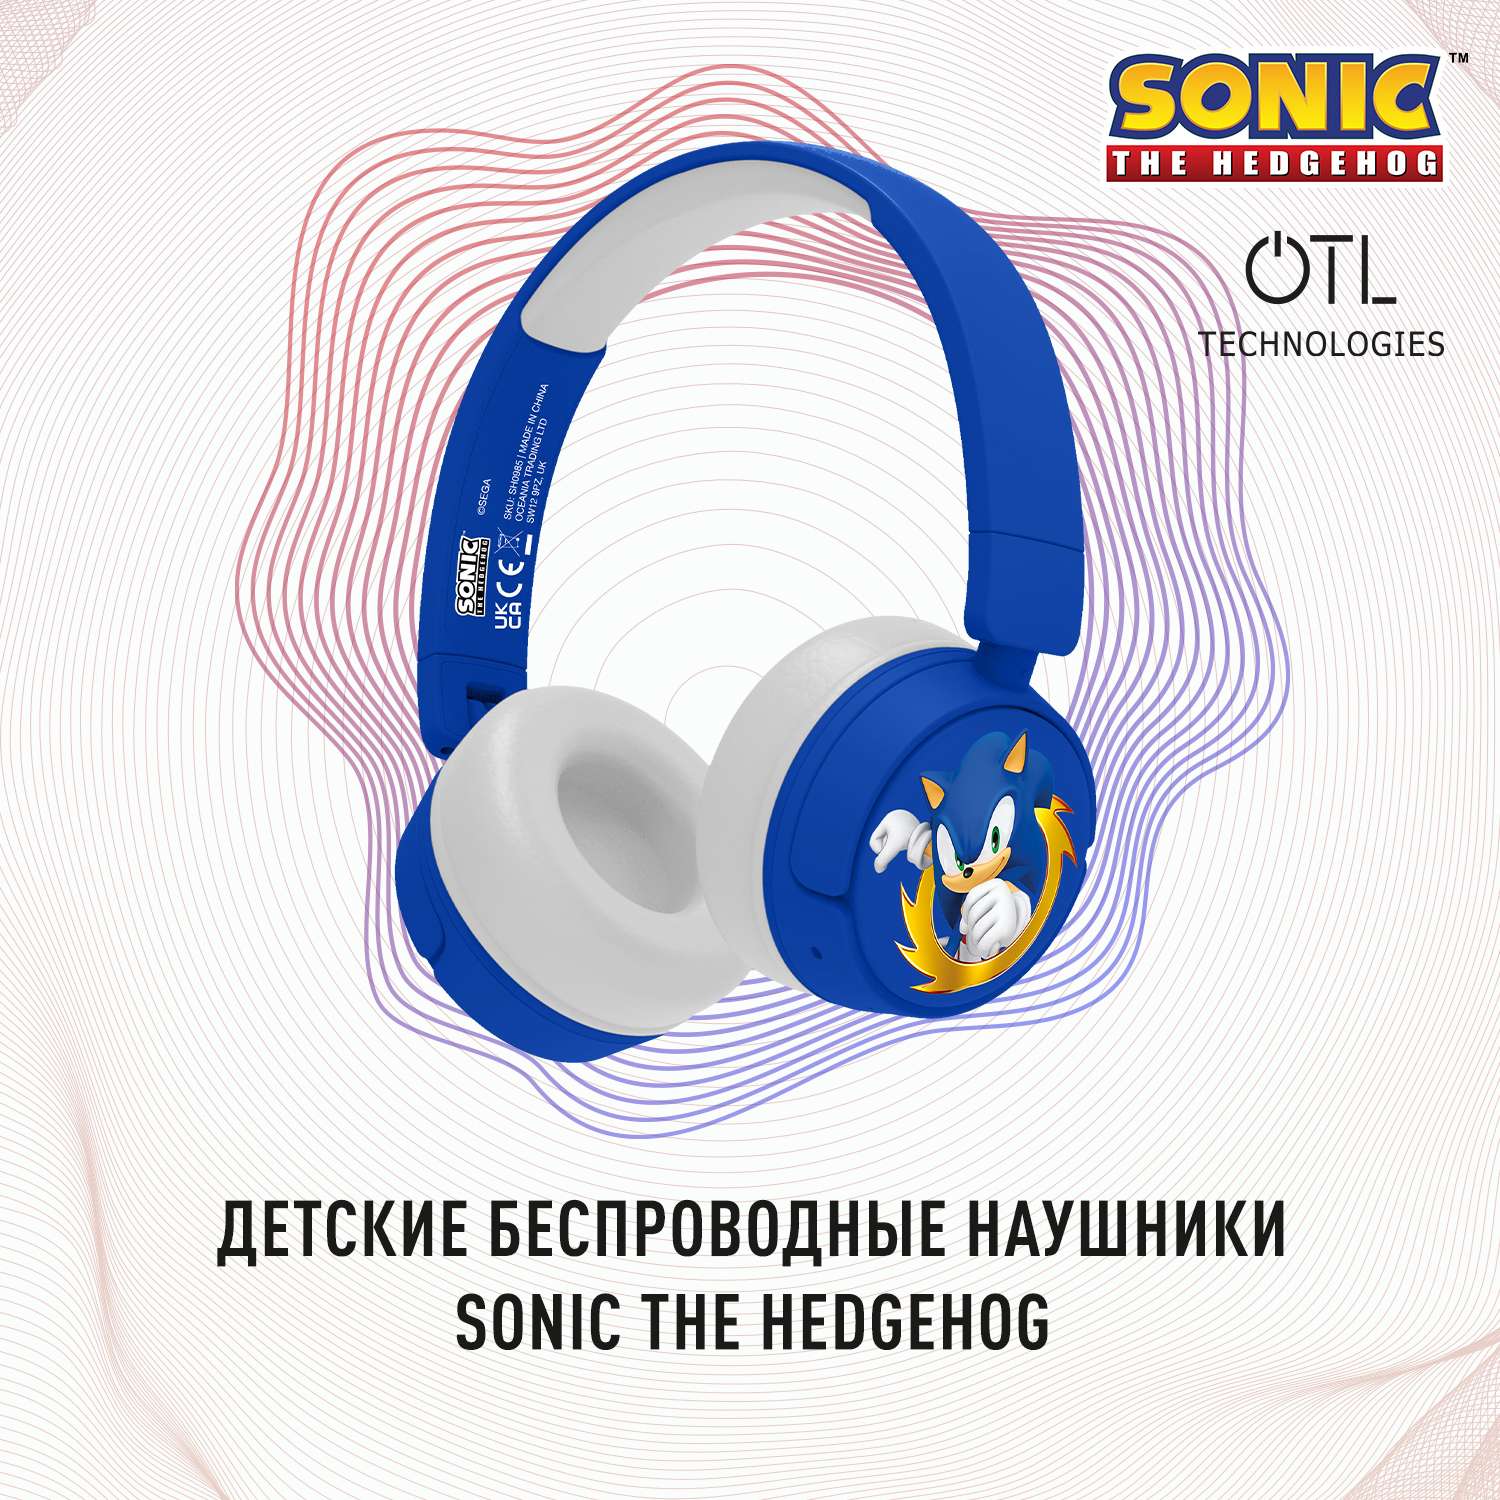 Наушники беспроводные OTL Technologies детские Sonic the Hedgehog синие - фото 2